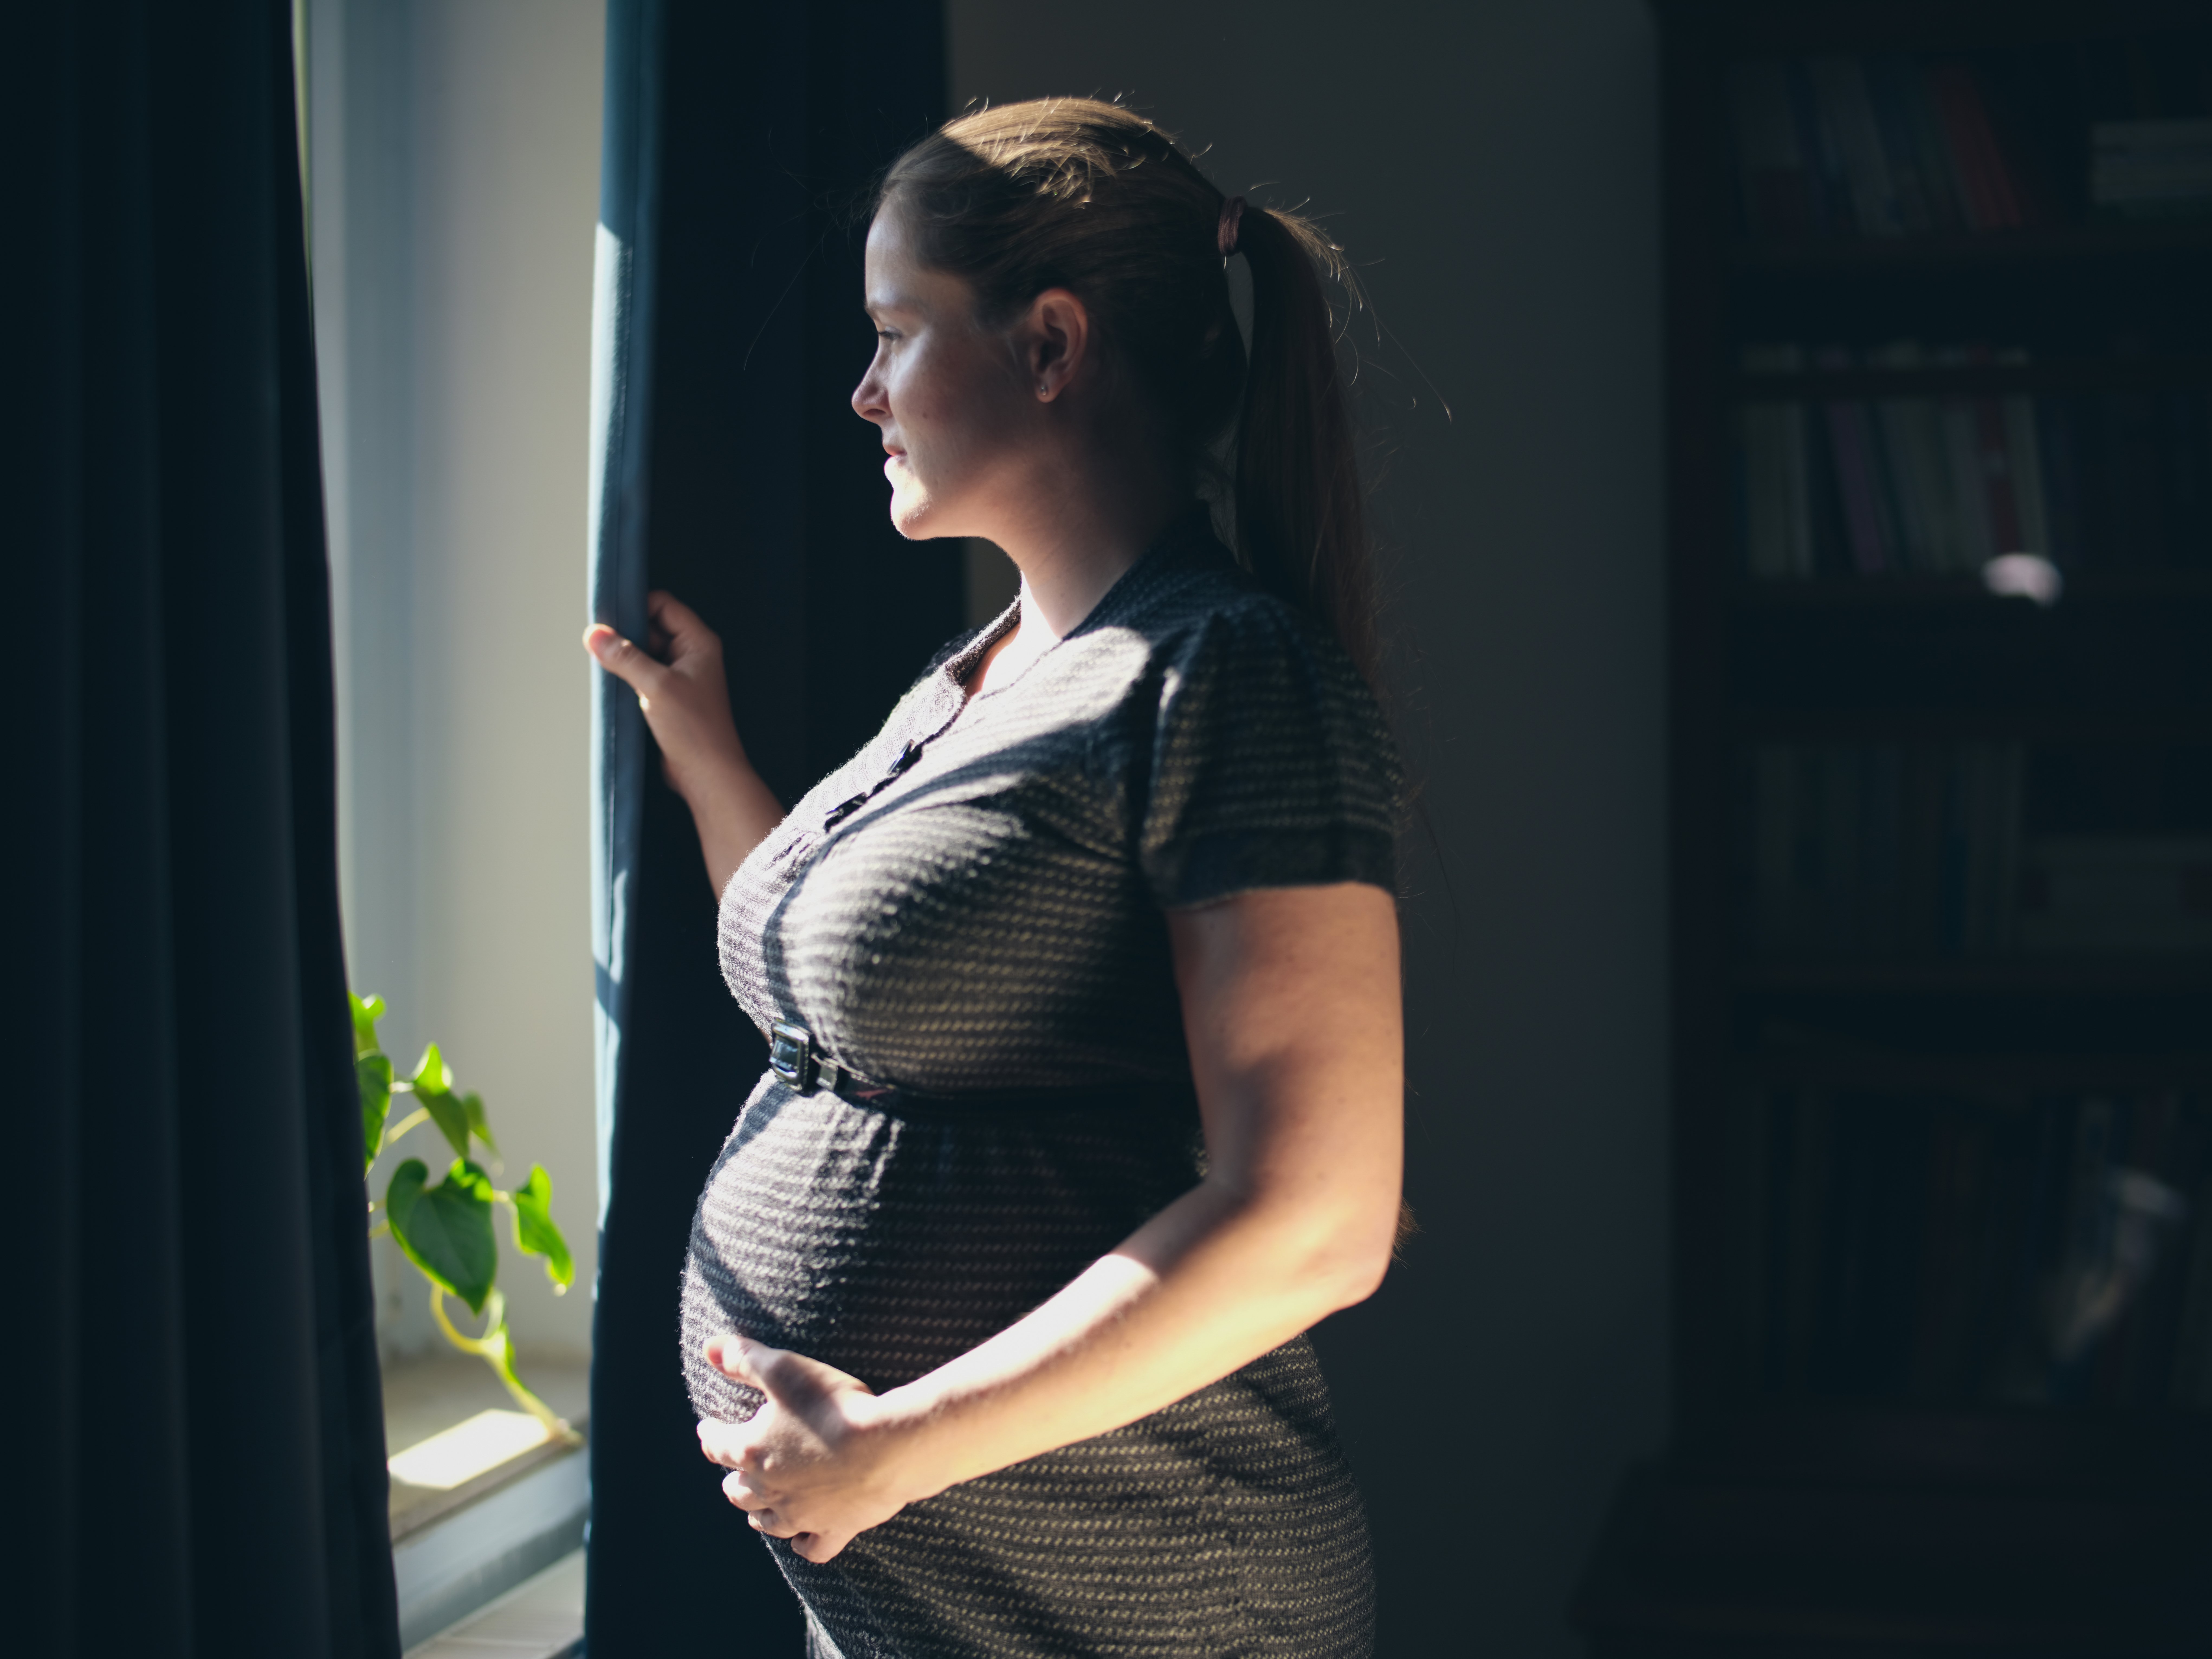 Eine schwangere Frau, die aus dem Fenster blickt | Quelle: Shutterstock